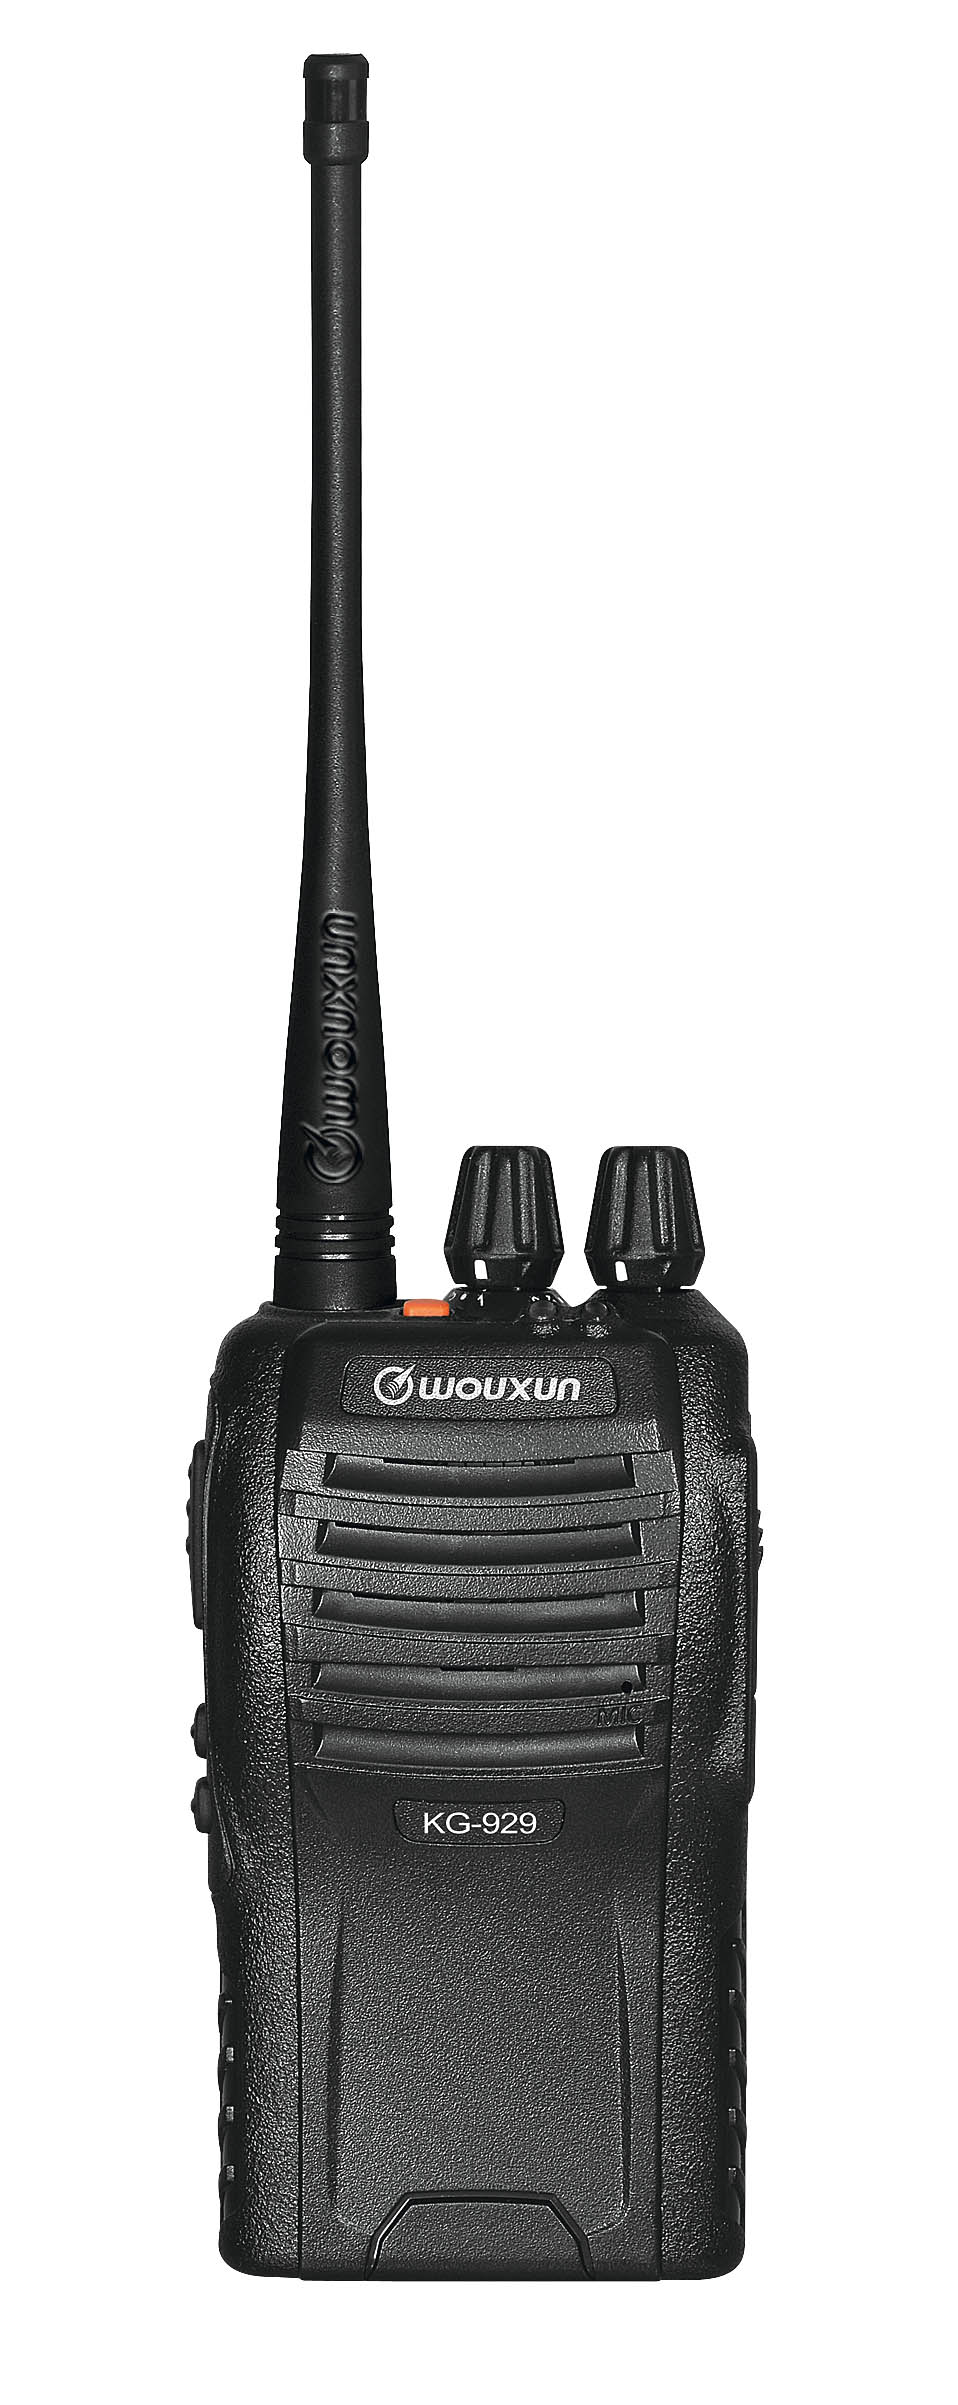 Wouxun KG-929 UHF ammattiradiopuhelin